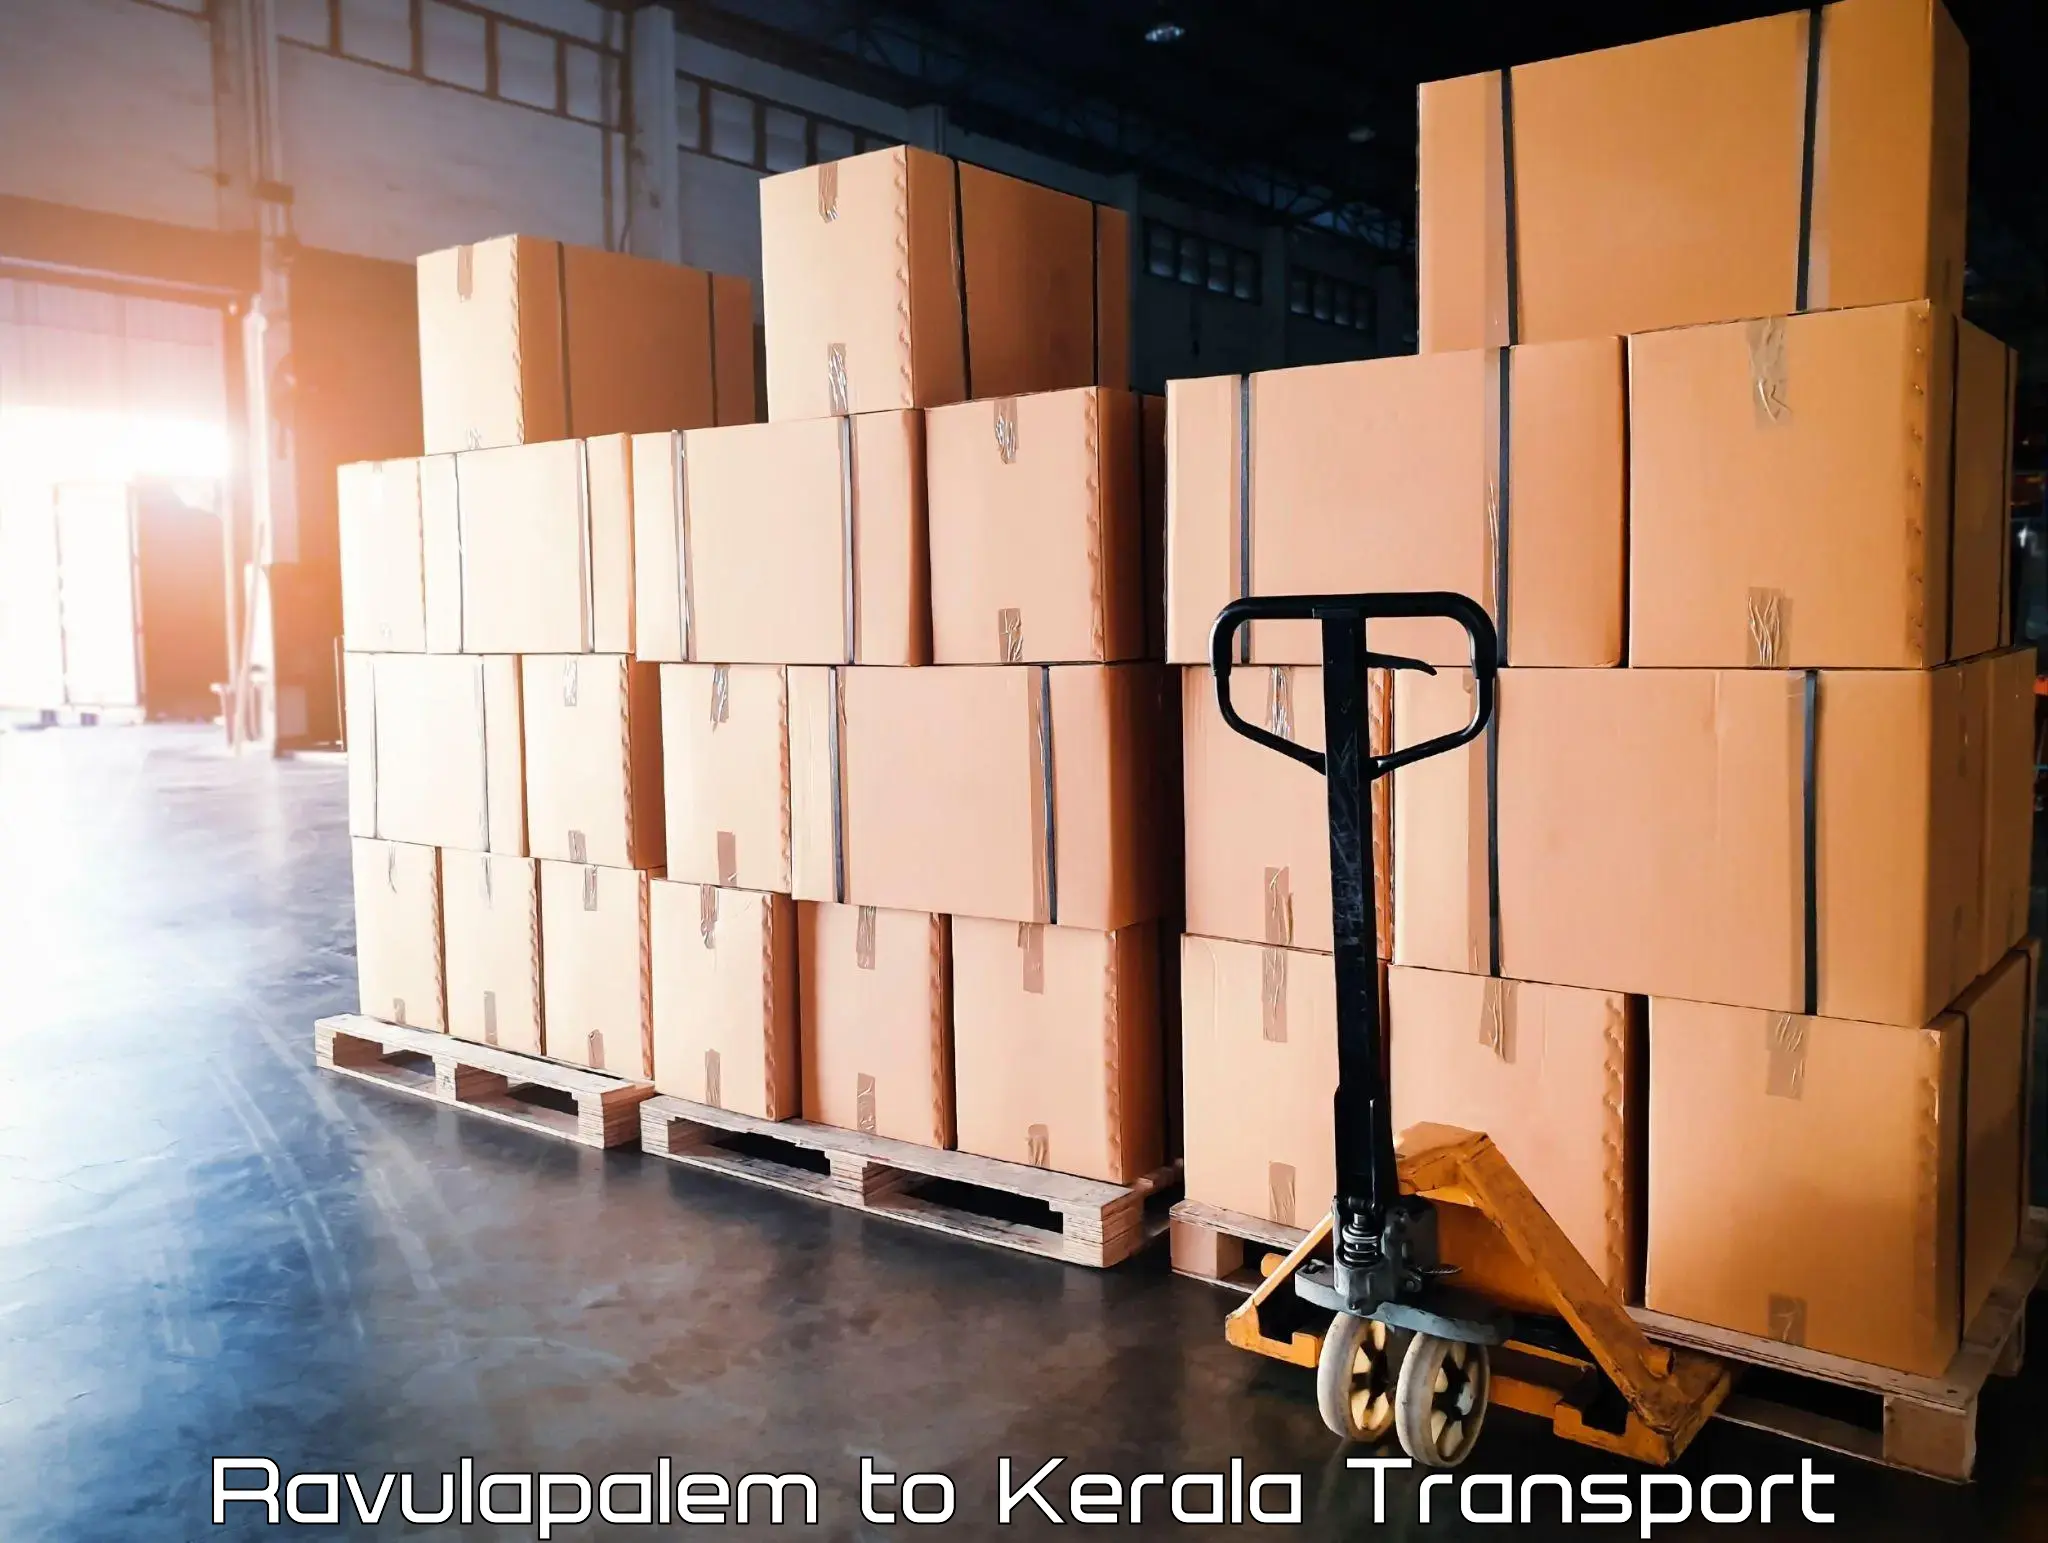 Shipping partner Ravulapalem to Kochi